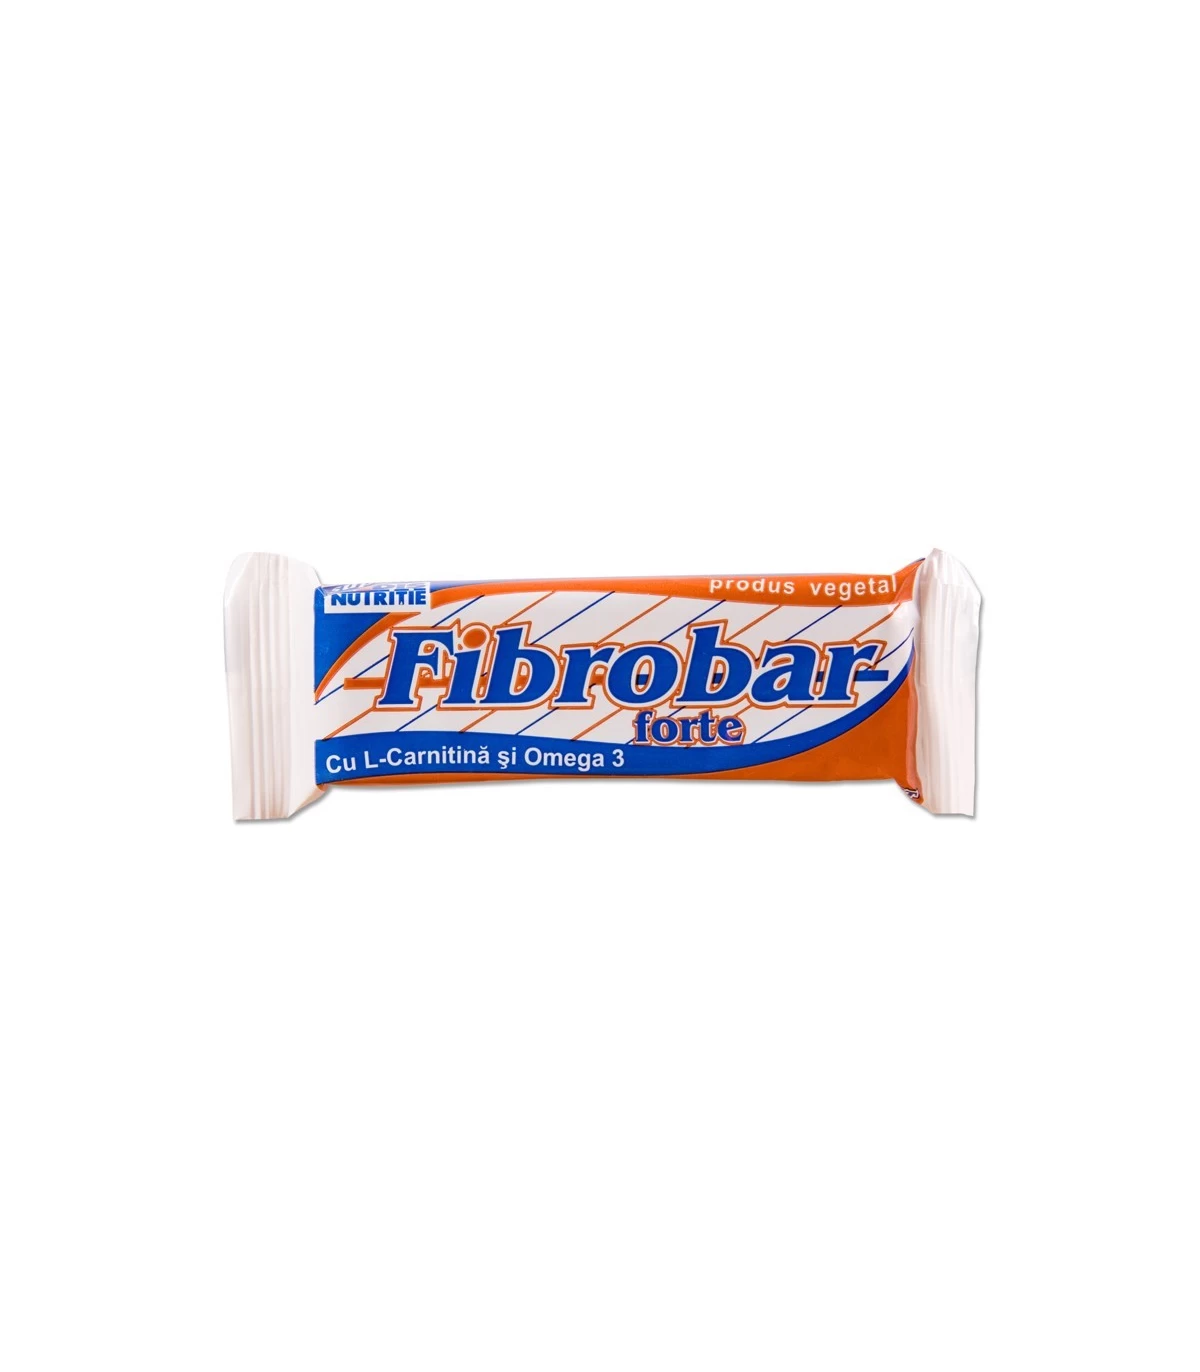 Slăbire - Fibro Bar forte baton pentru slabit 60g (Redis), epastila.ro